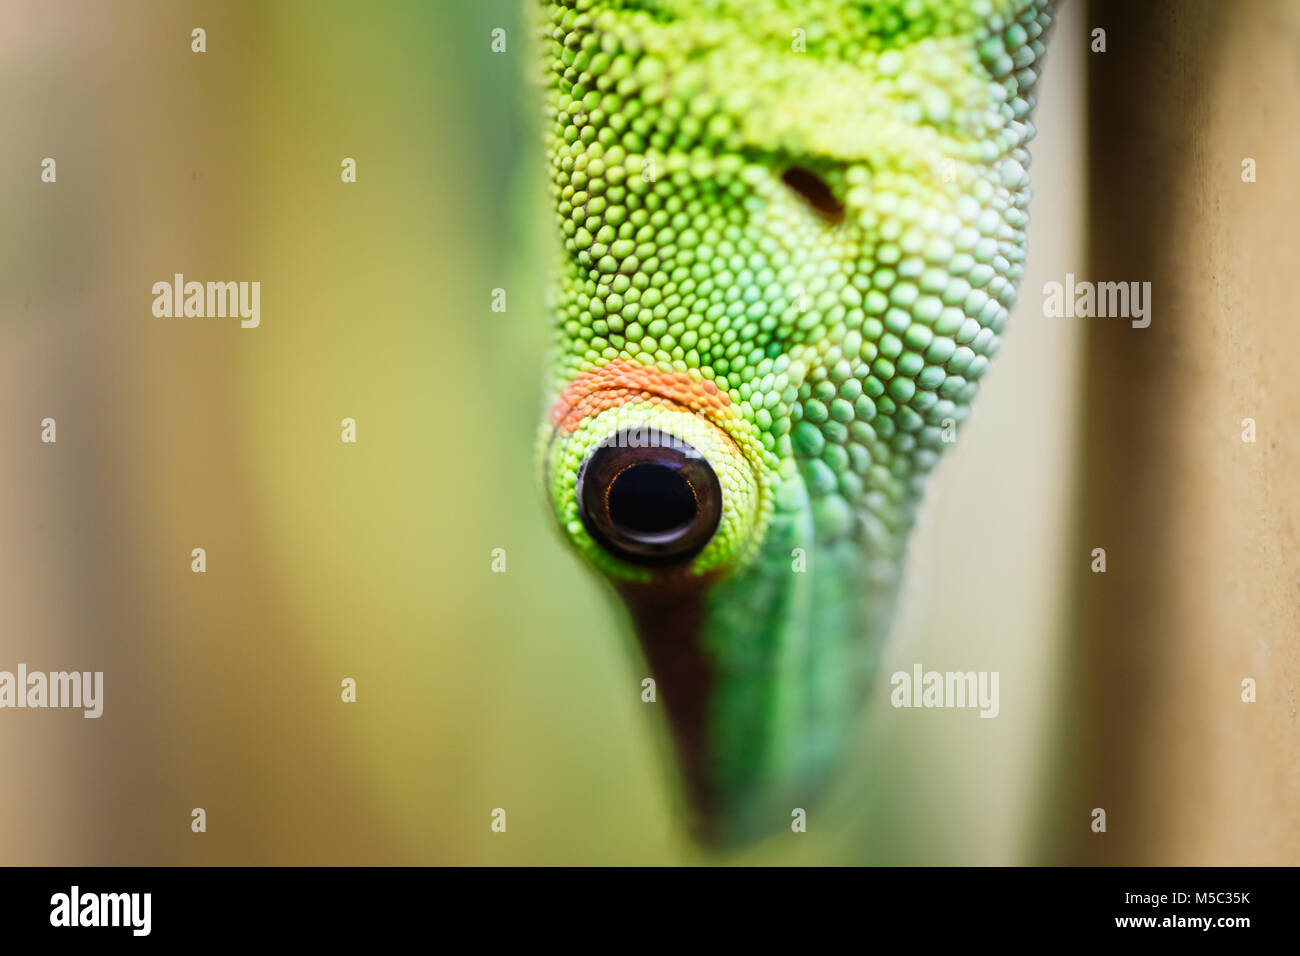 Close up green lizard eye Banque D'Images